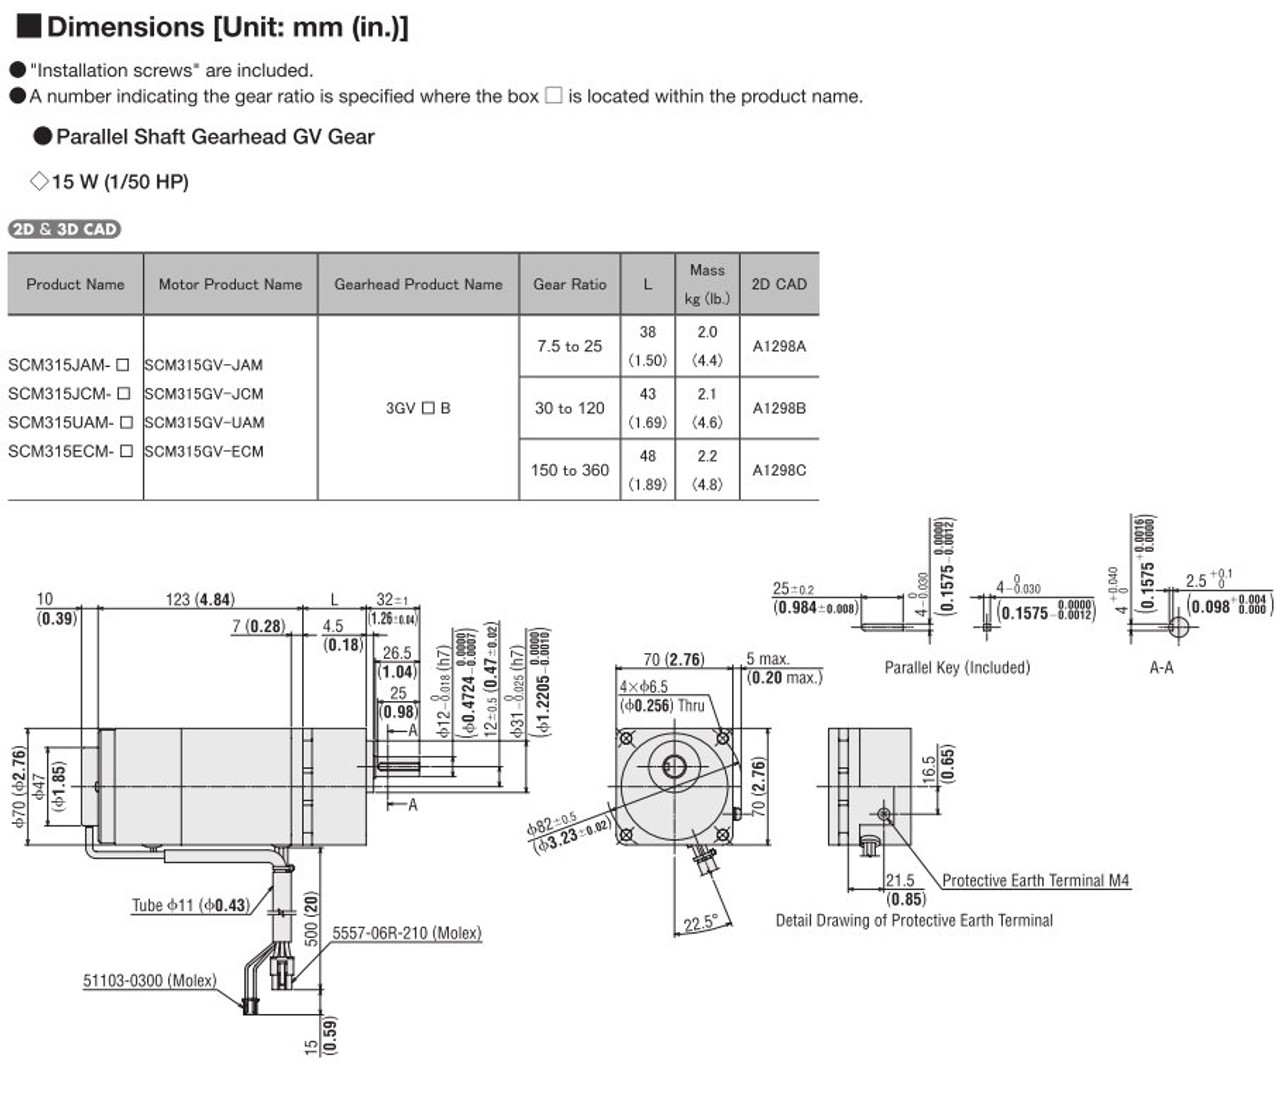 SCM315UAM-300 / DSCD15UAM - Dimensions